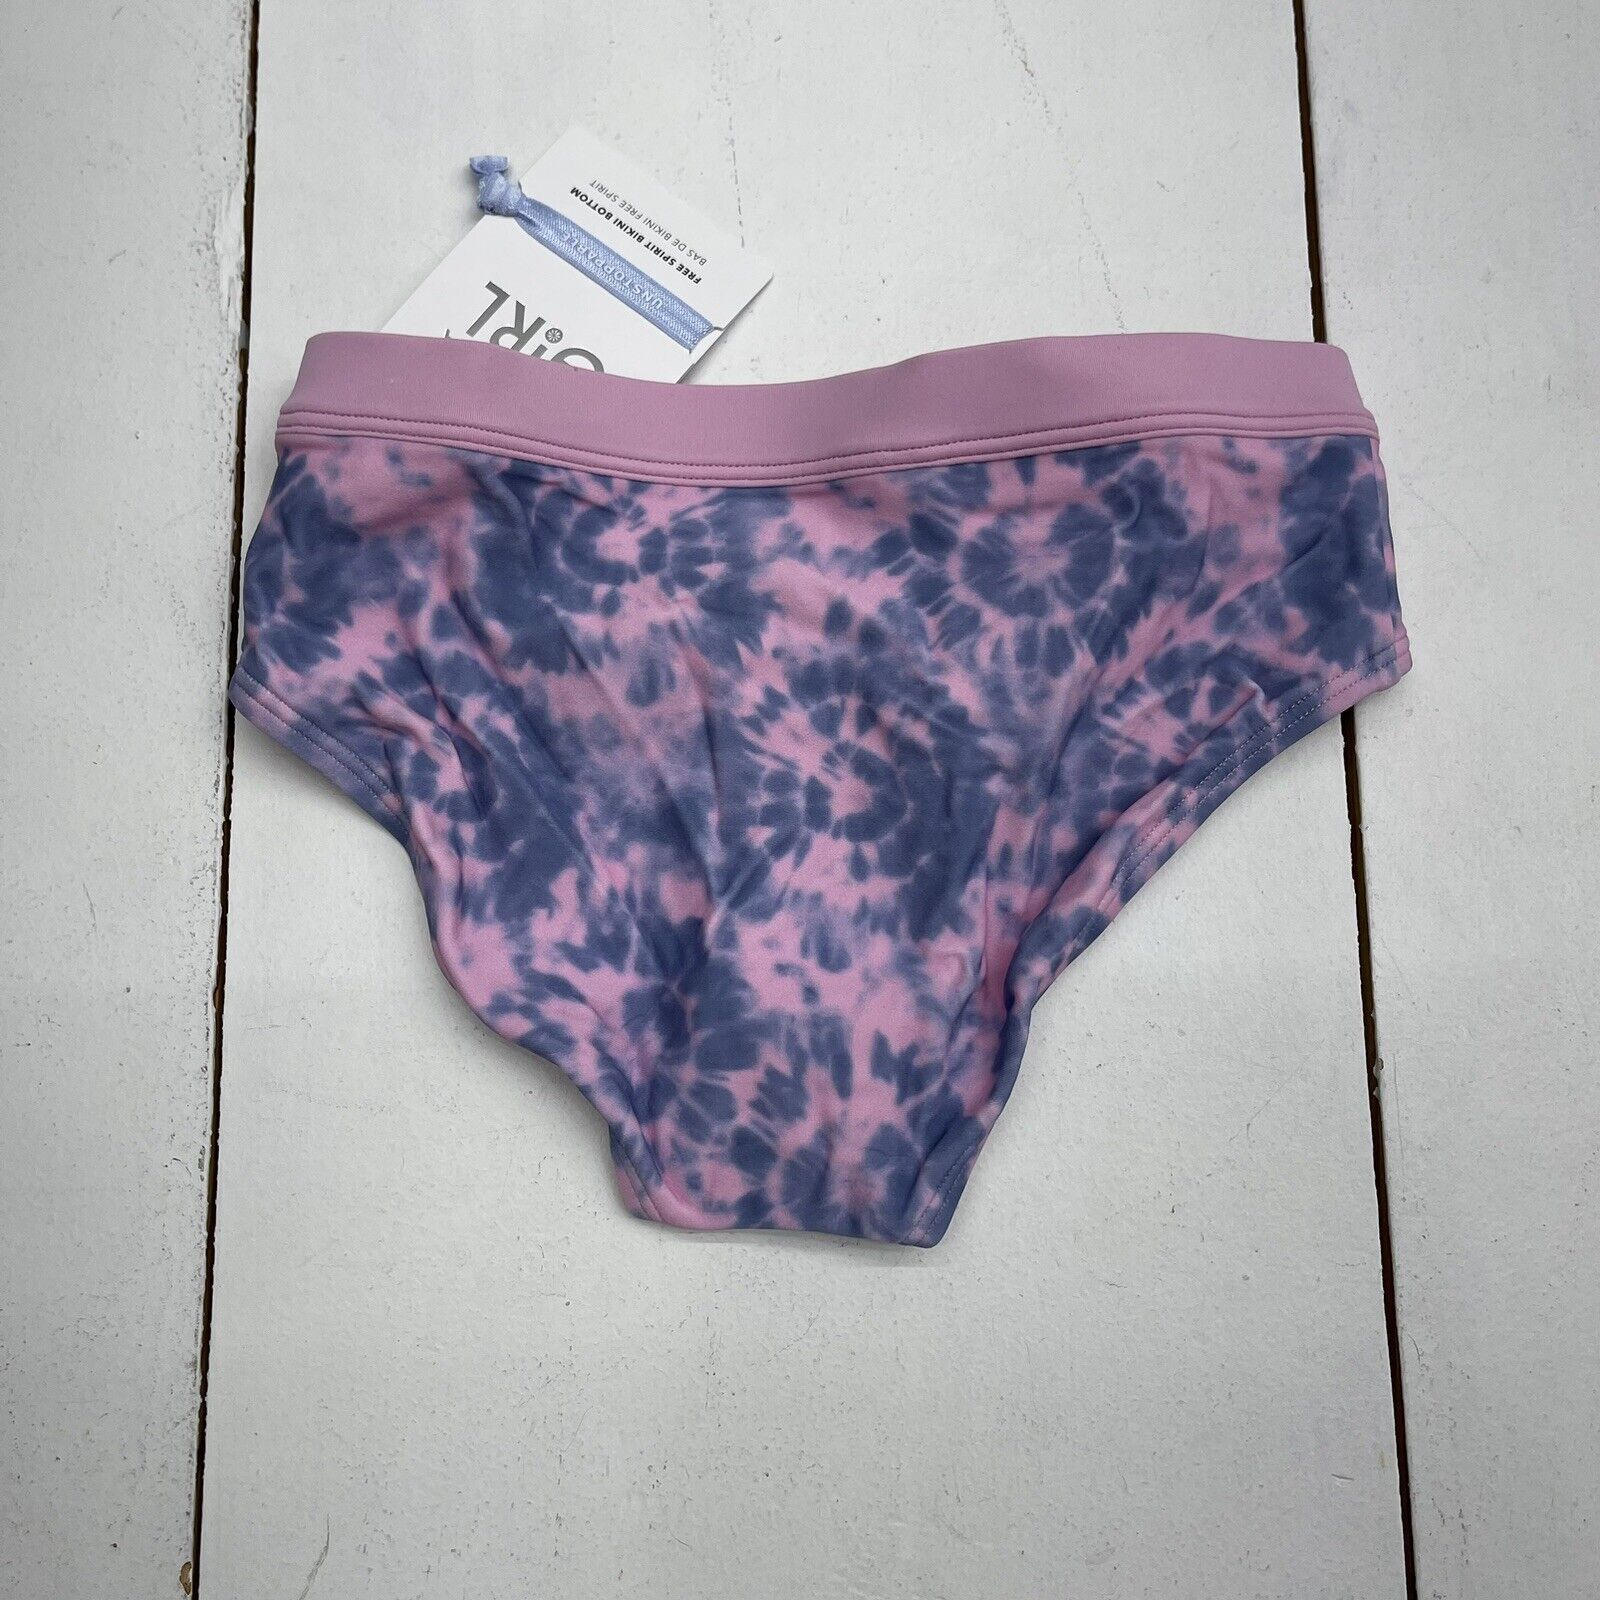 Athleta Girl Free Spirit Pink Blue Tie Dye Bikini Bottoms Size Medium -  beyond exchange